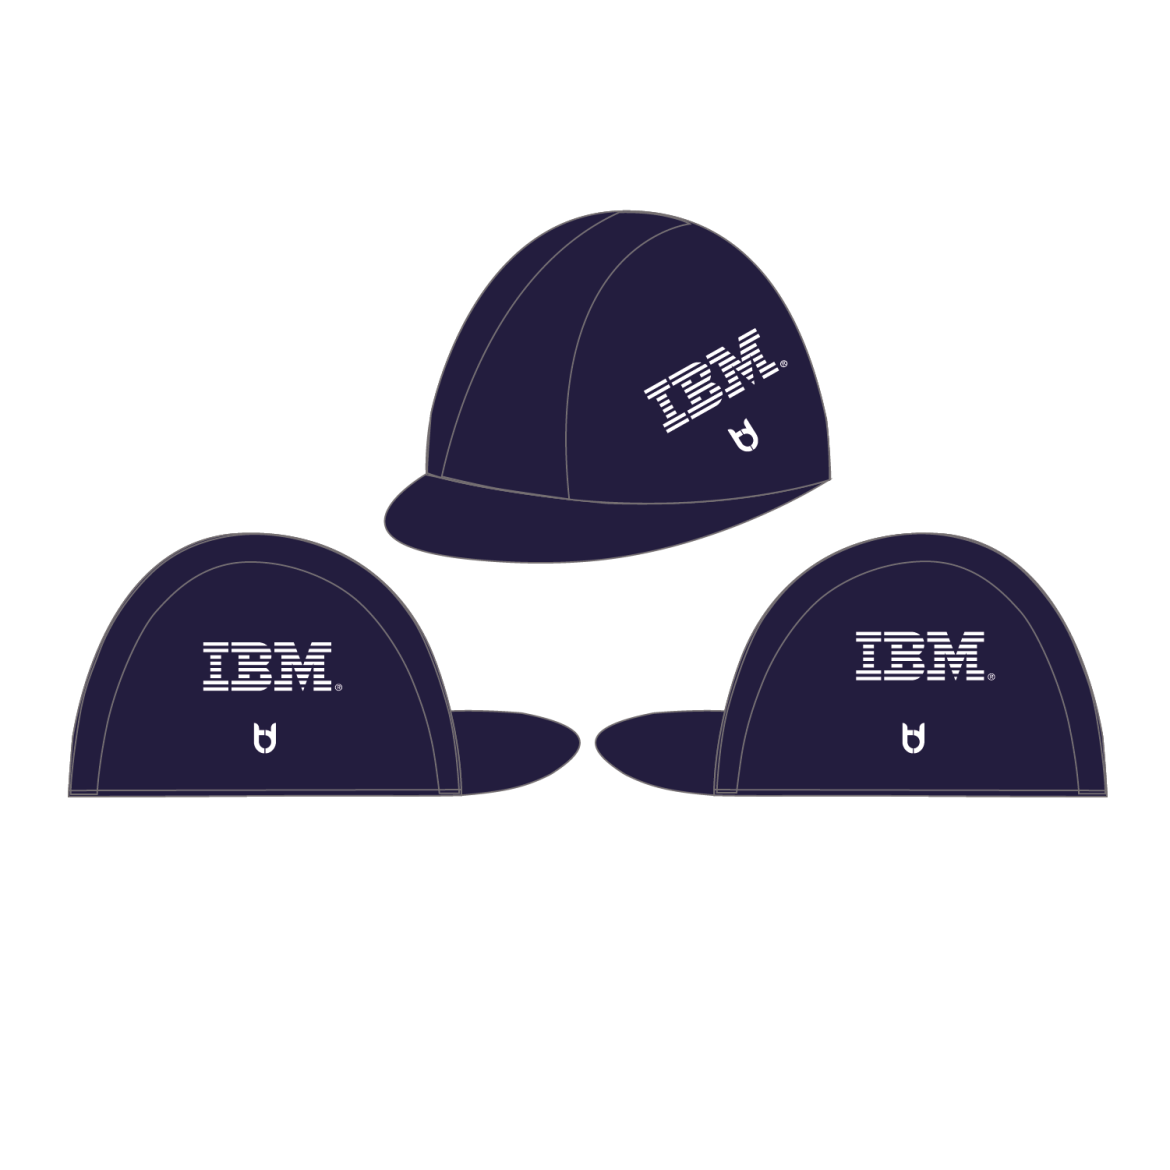 IBM cycling cap TD sportswear